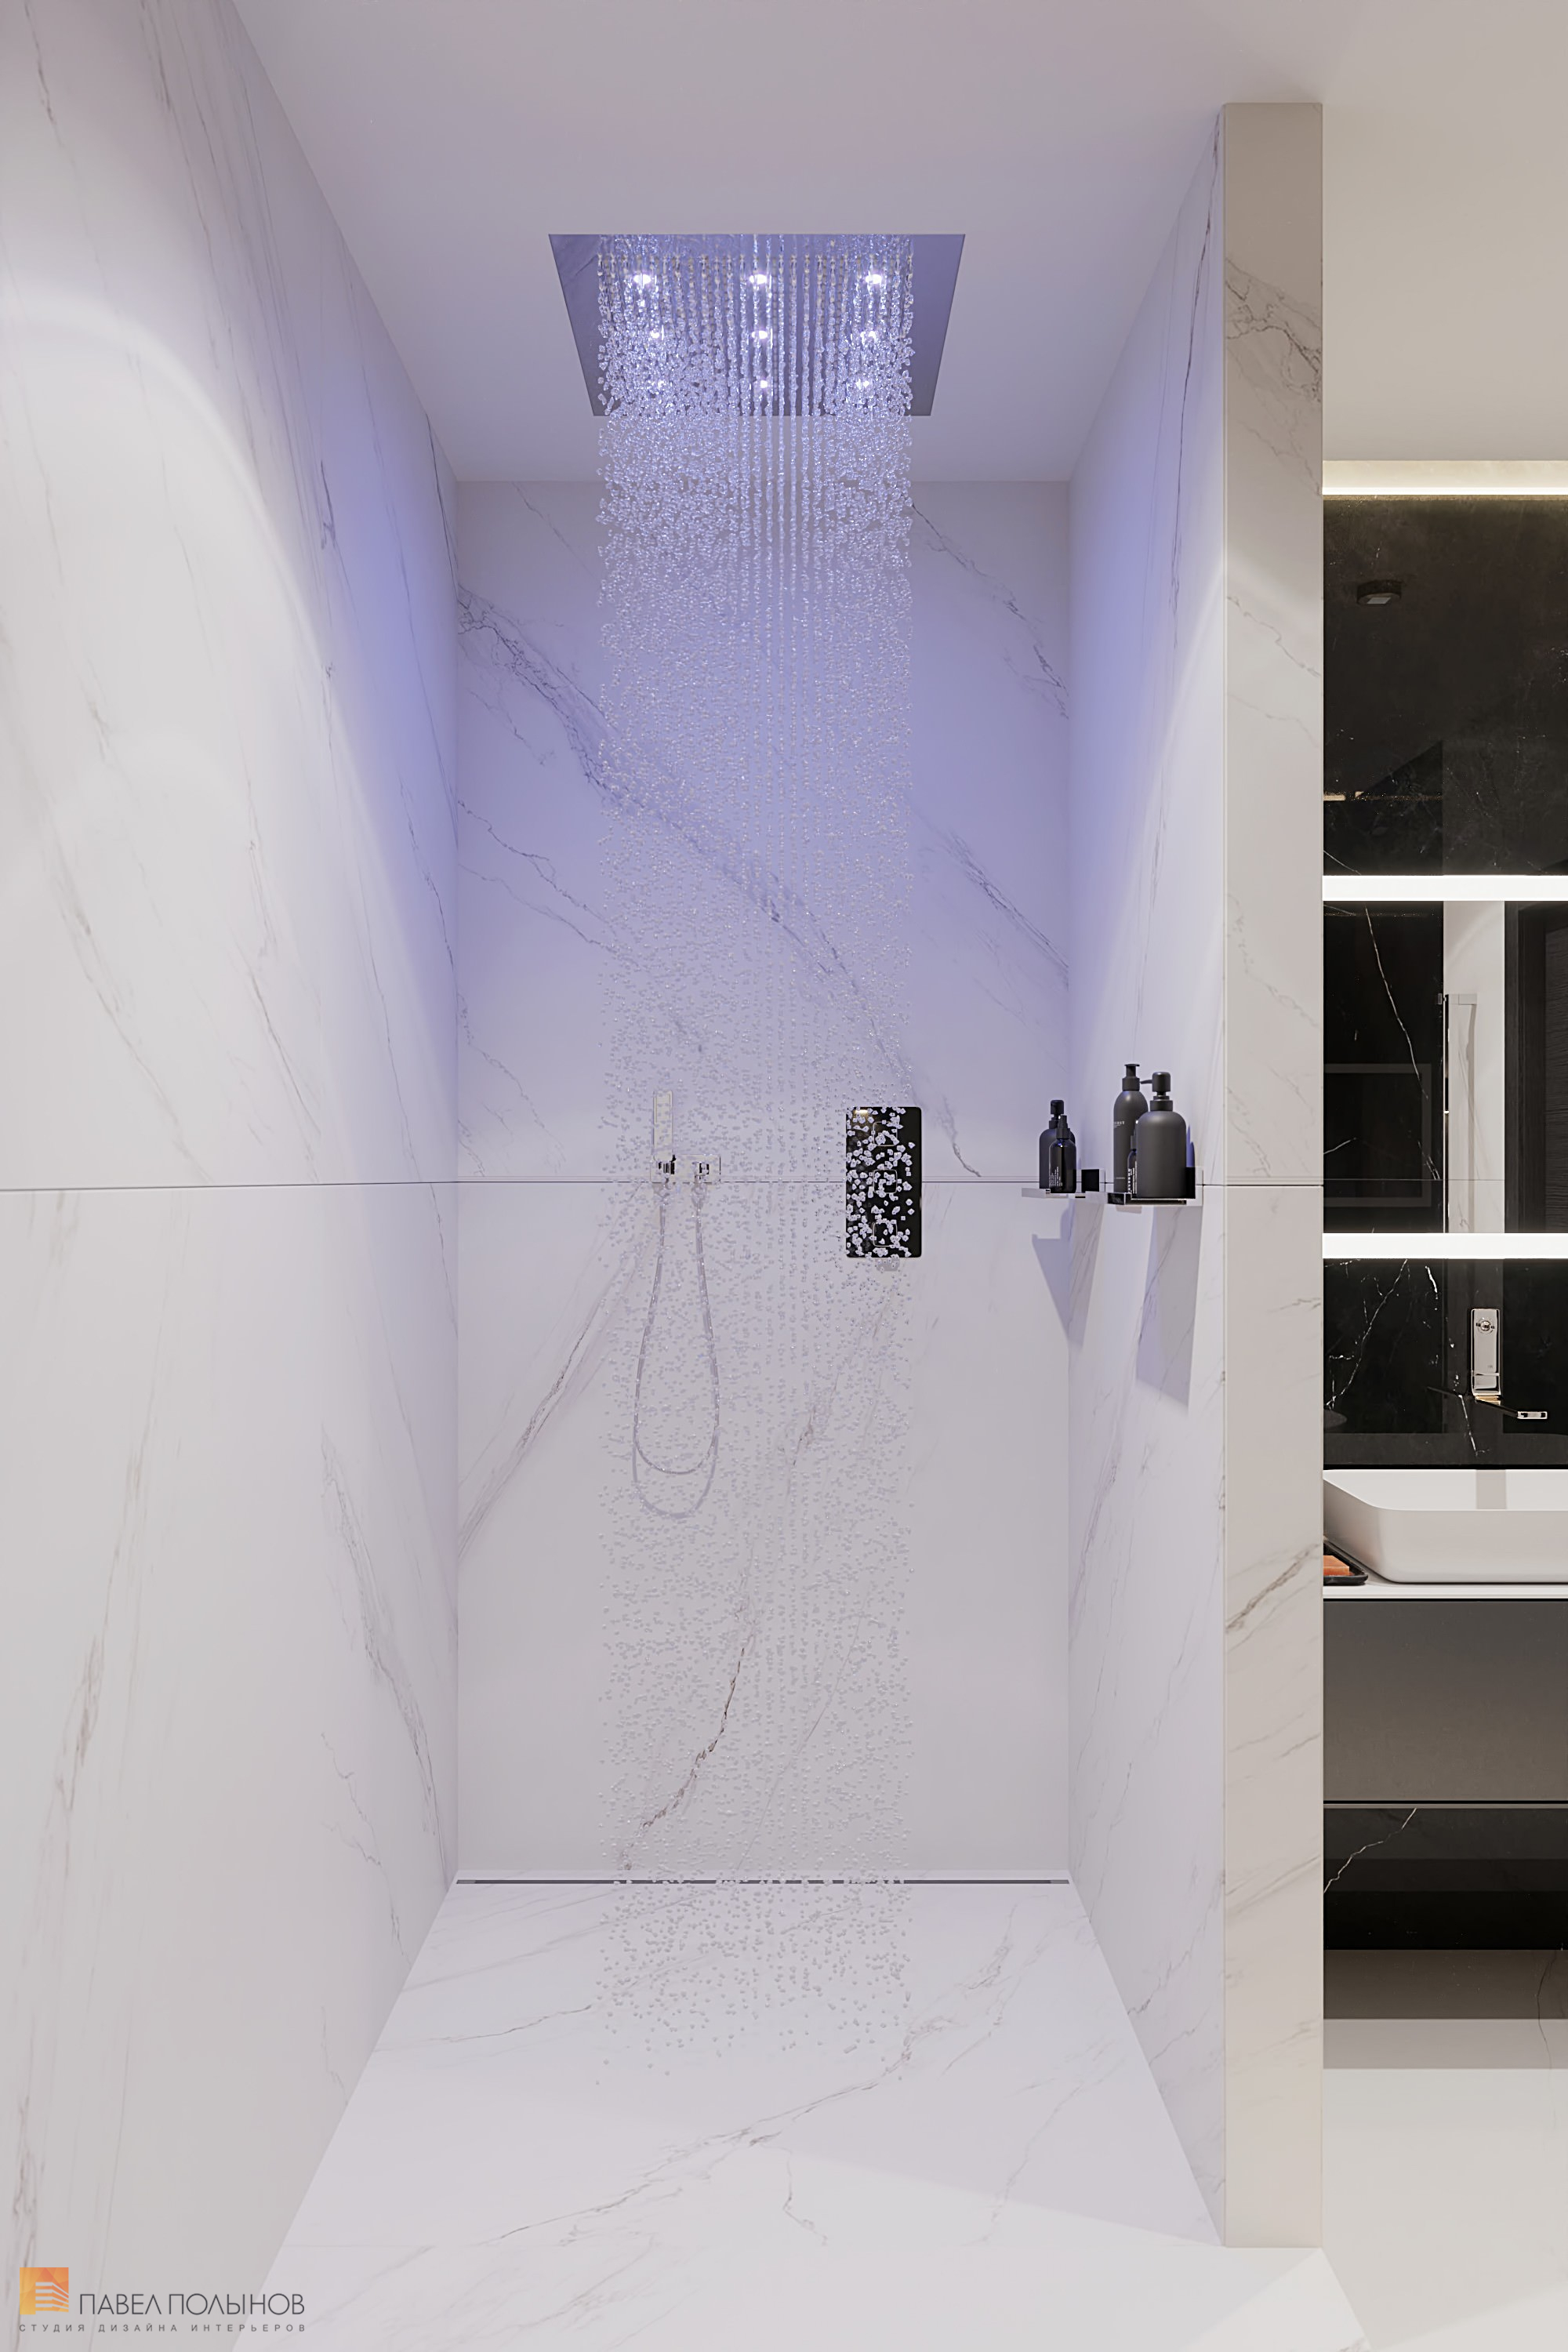 Фото дизайн интерьера ванной комнаты из проекта «Интерьер квартиры в современном стиле, ЖК «Остров», 90 кв.м.»